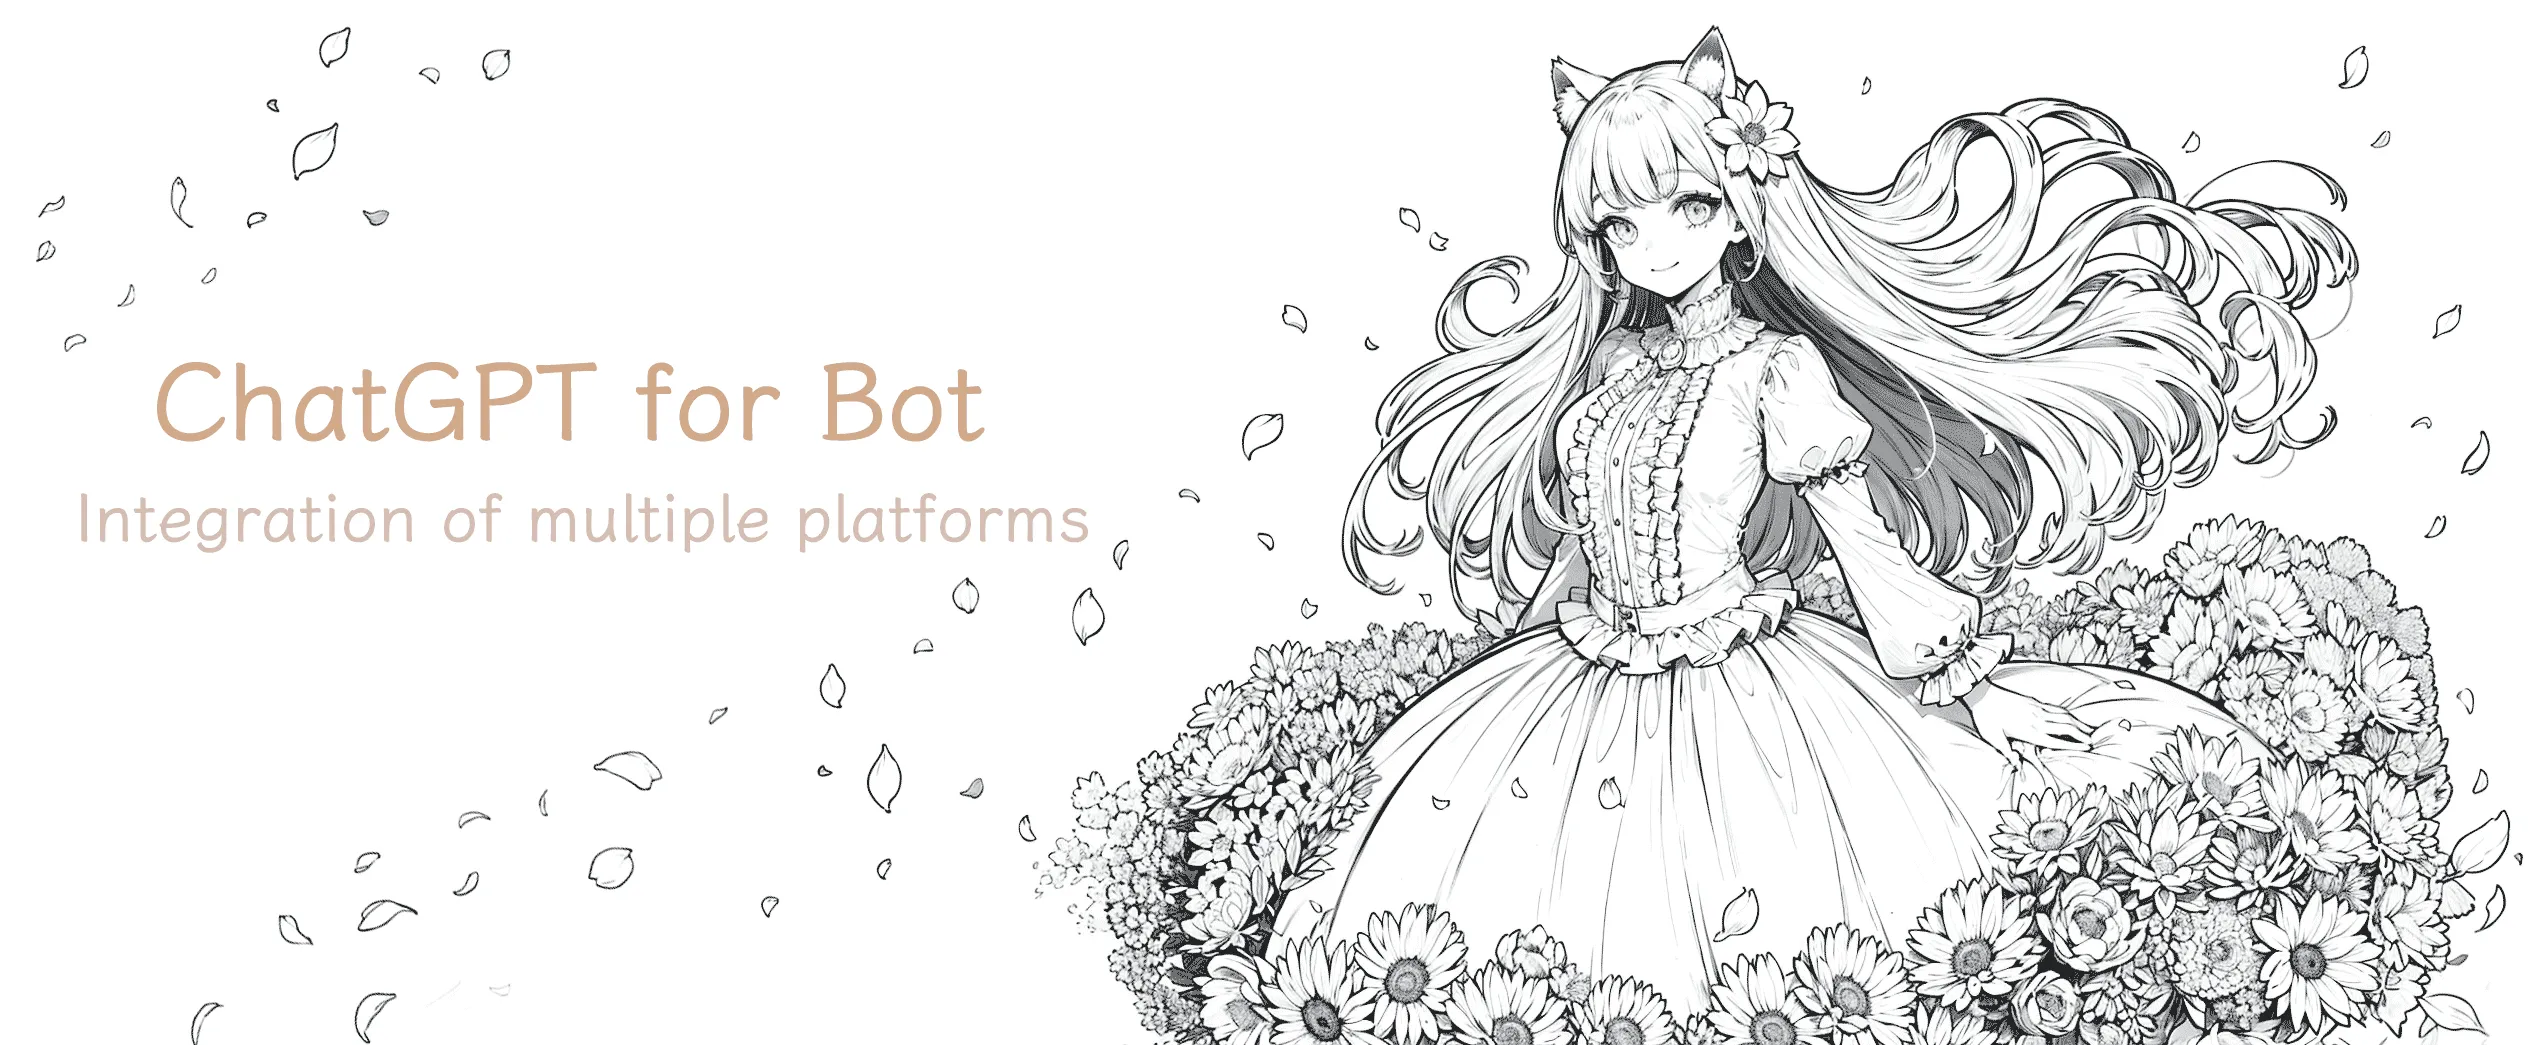 ChatGPT for Bot